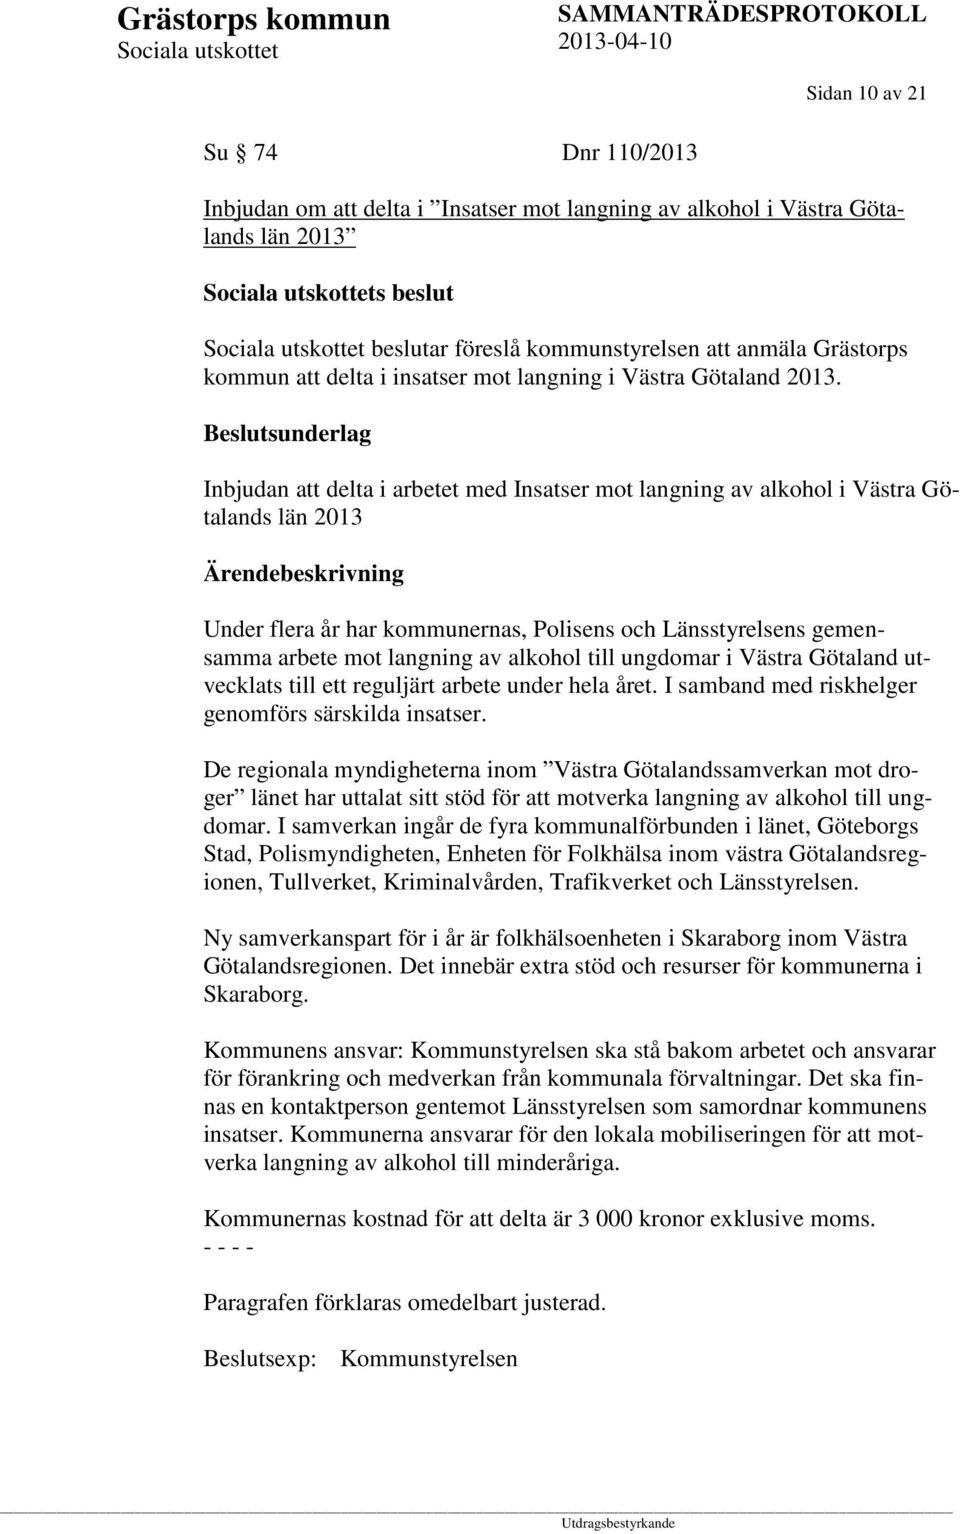 Beslutsunderlag Inbjudan att delta i arbetet med Insatser mot langning av alkohol i Västra Götalands län 2013 Under flera år har kommunernas, Polisens och Länsstyrelsens gemensamma arbete mot